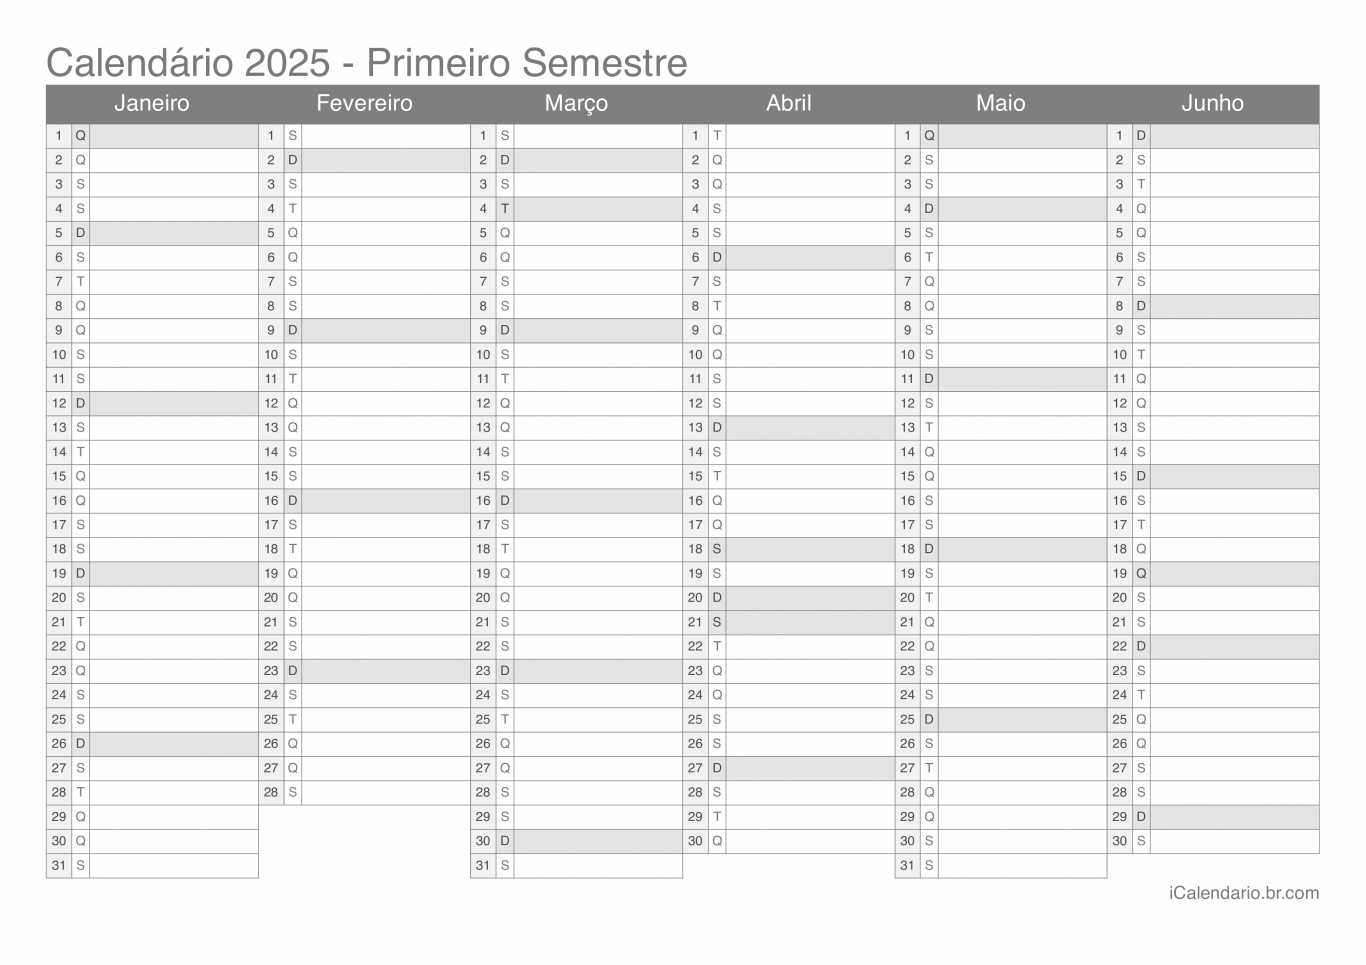 Calendário por semestre 2025